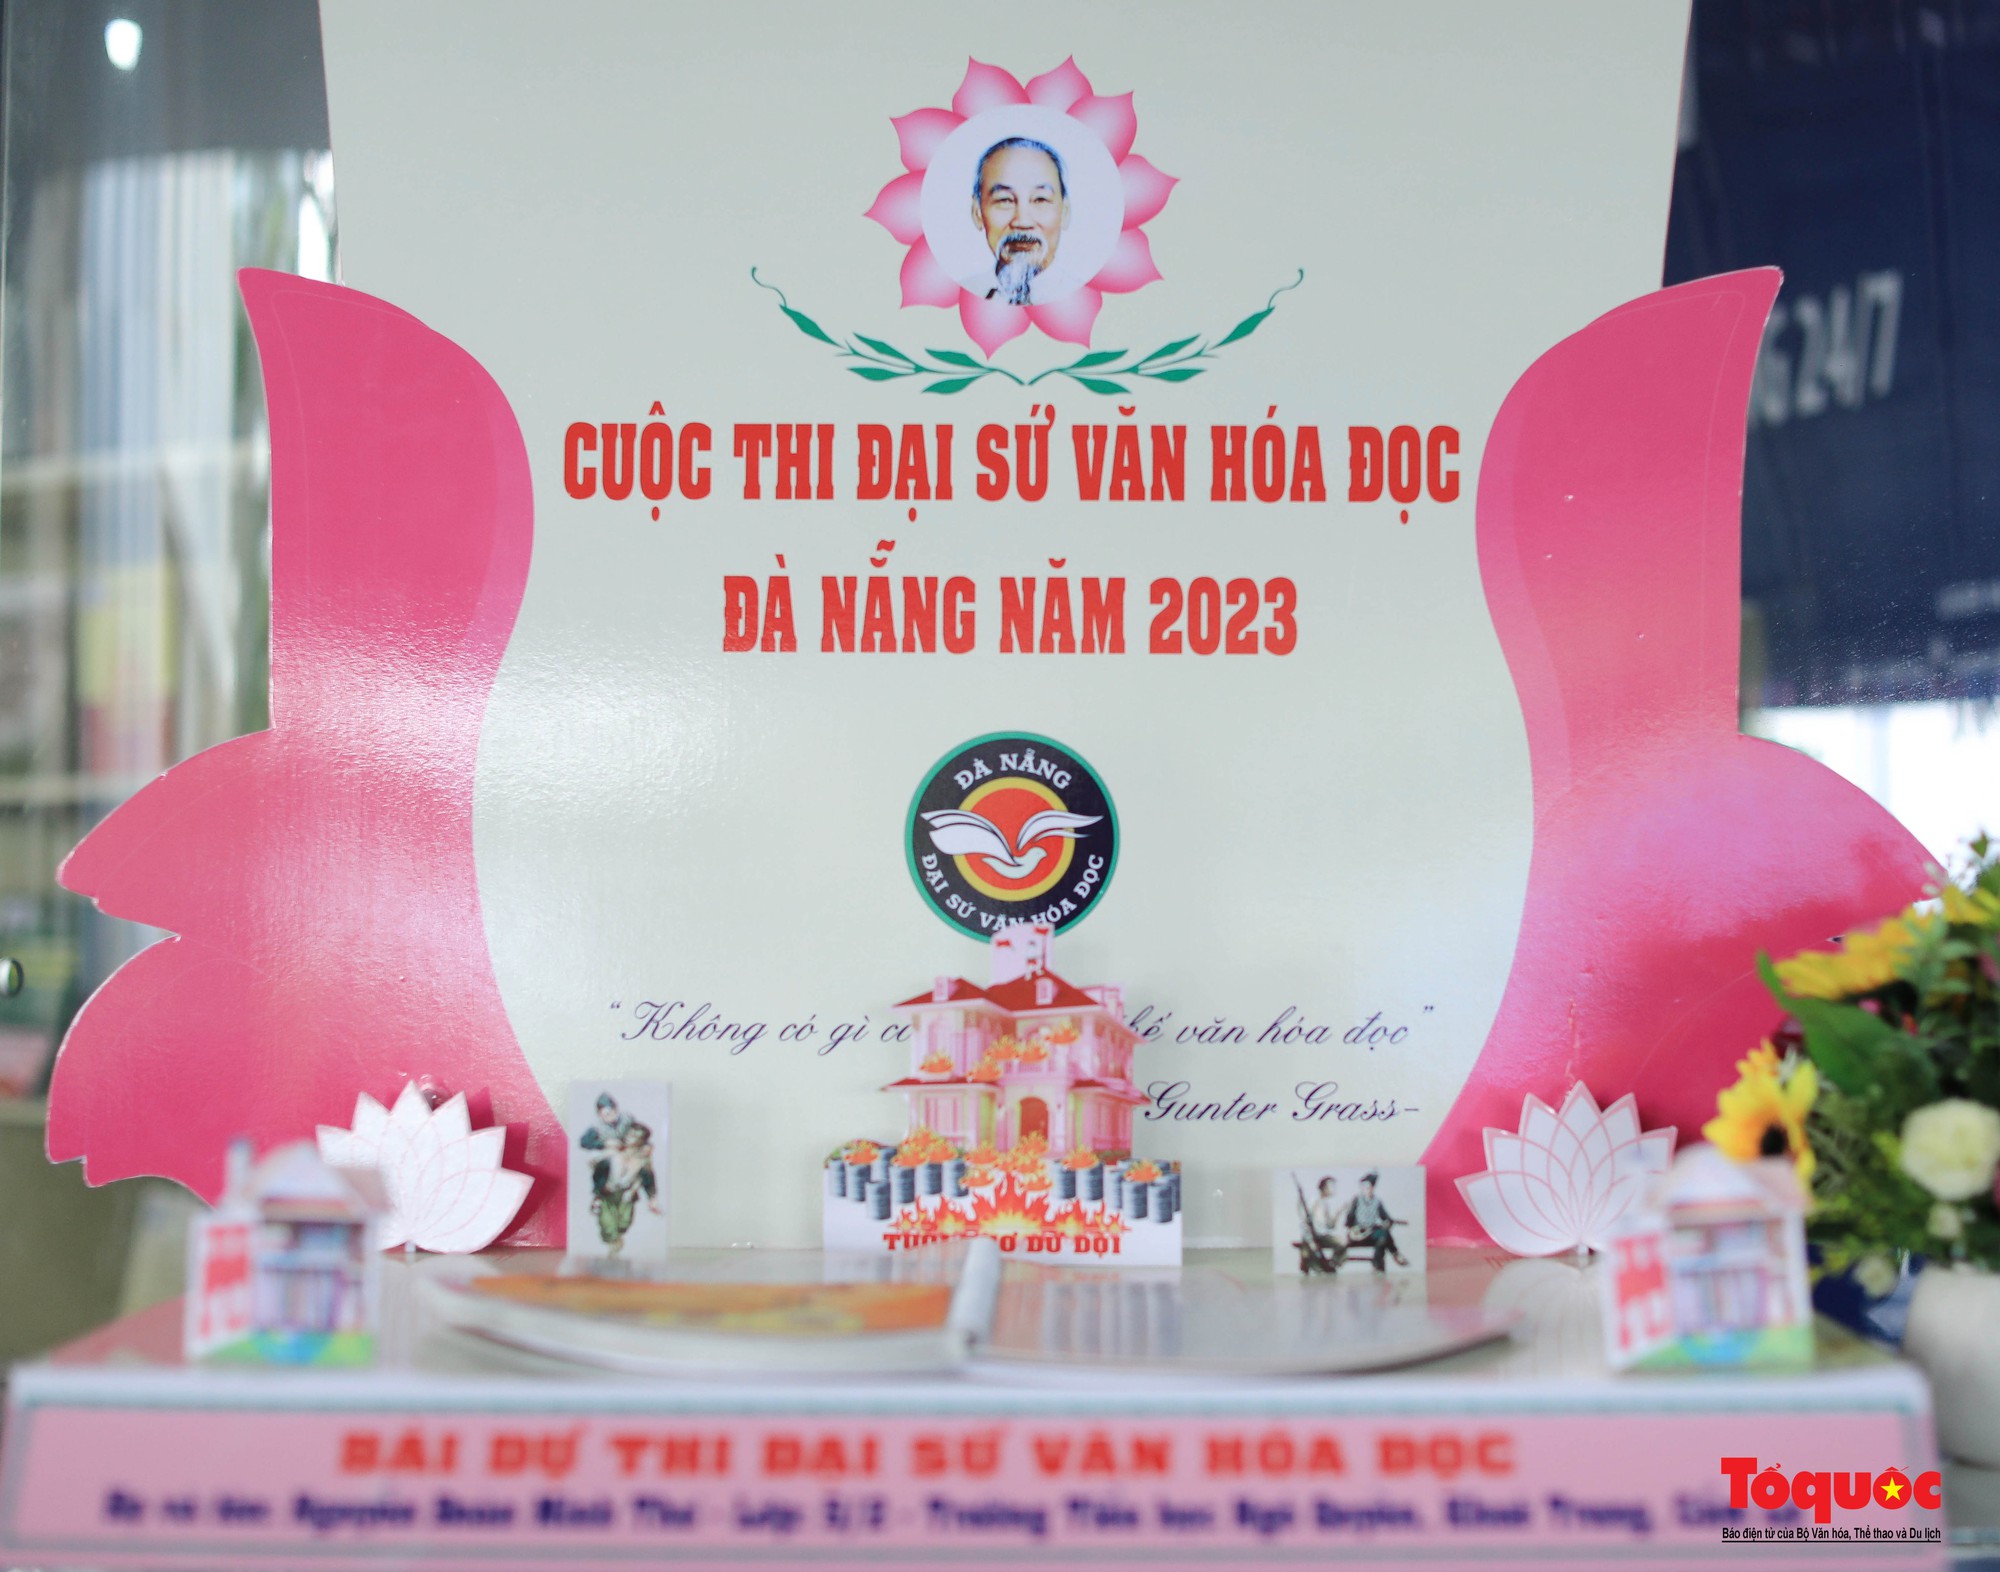 Trao giải Cuộc thi “Đại sứ Văn hóa đọc Đà Nẵng năm 2023” - Ảnh 13.